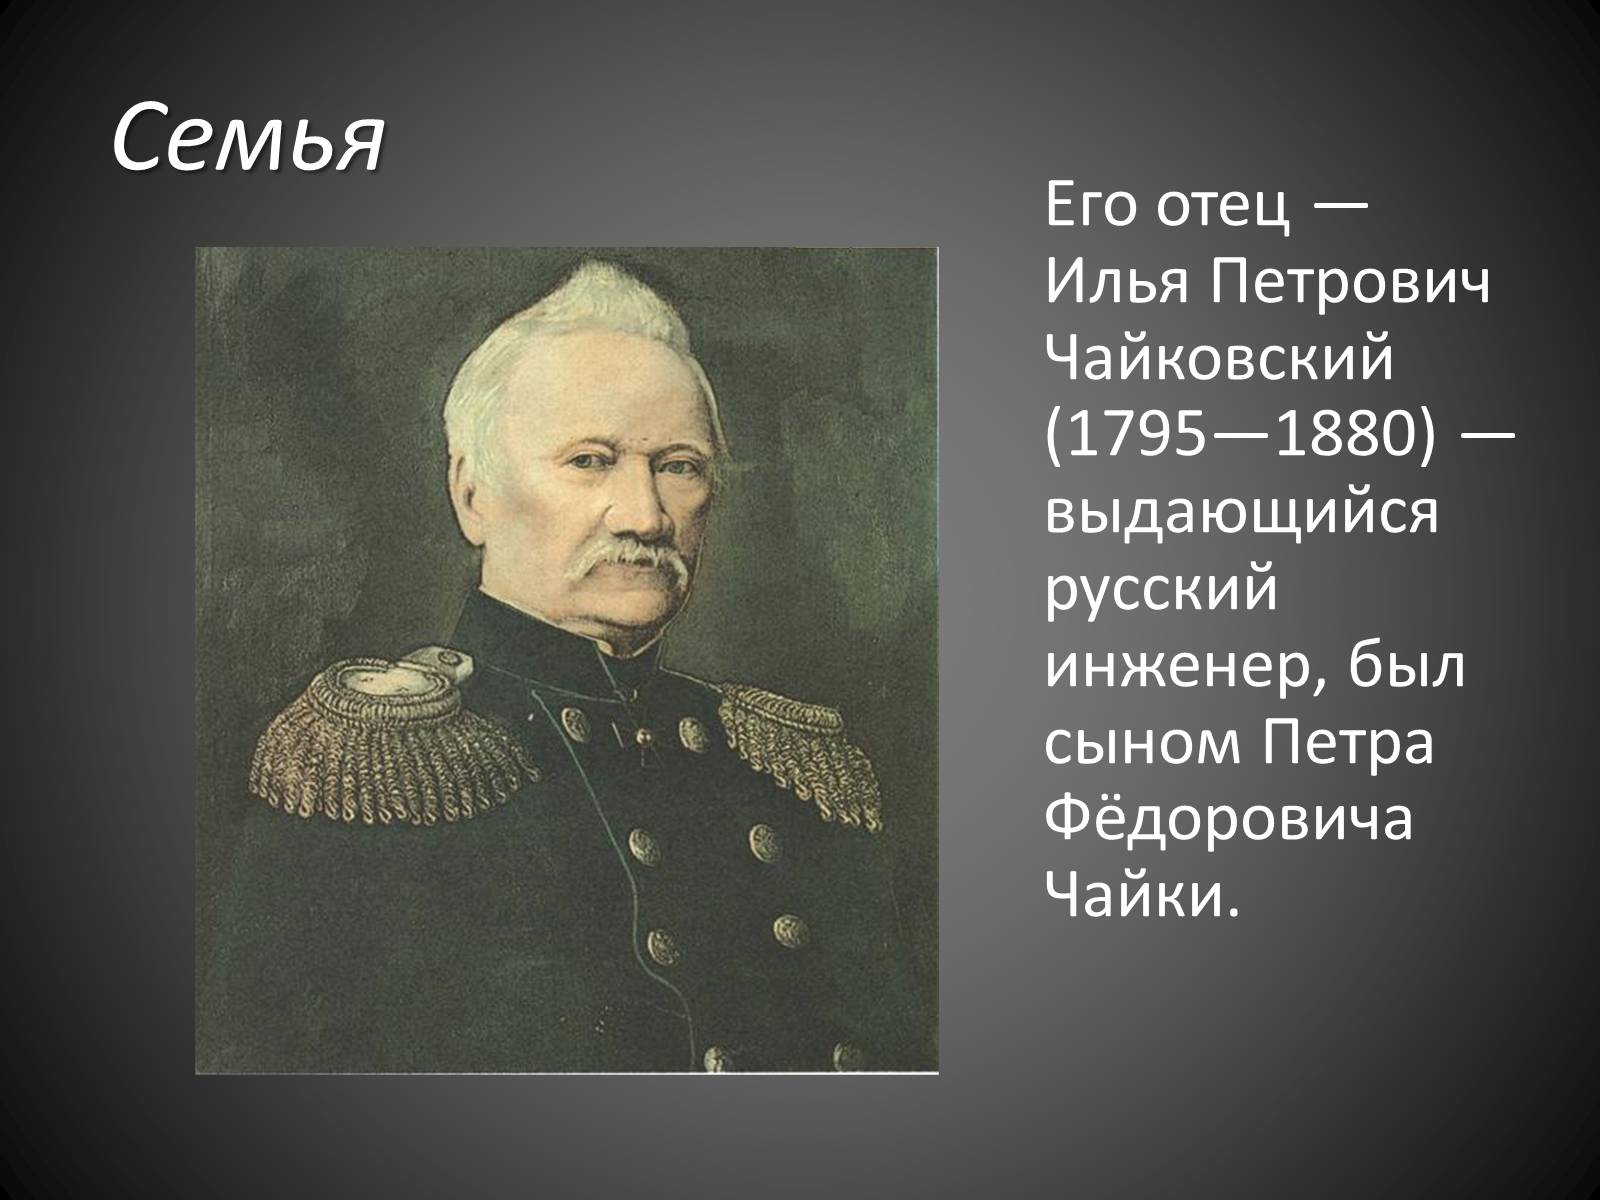 Илья Петрович Чайковский